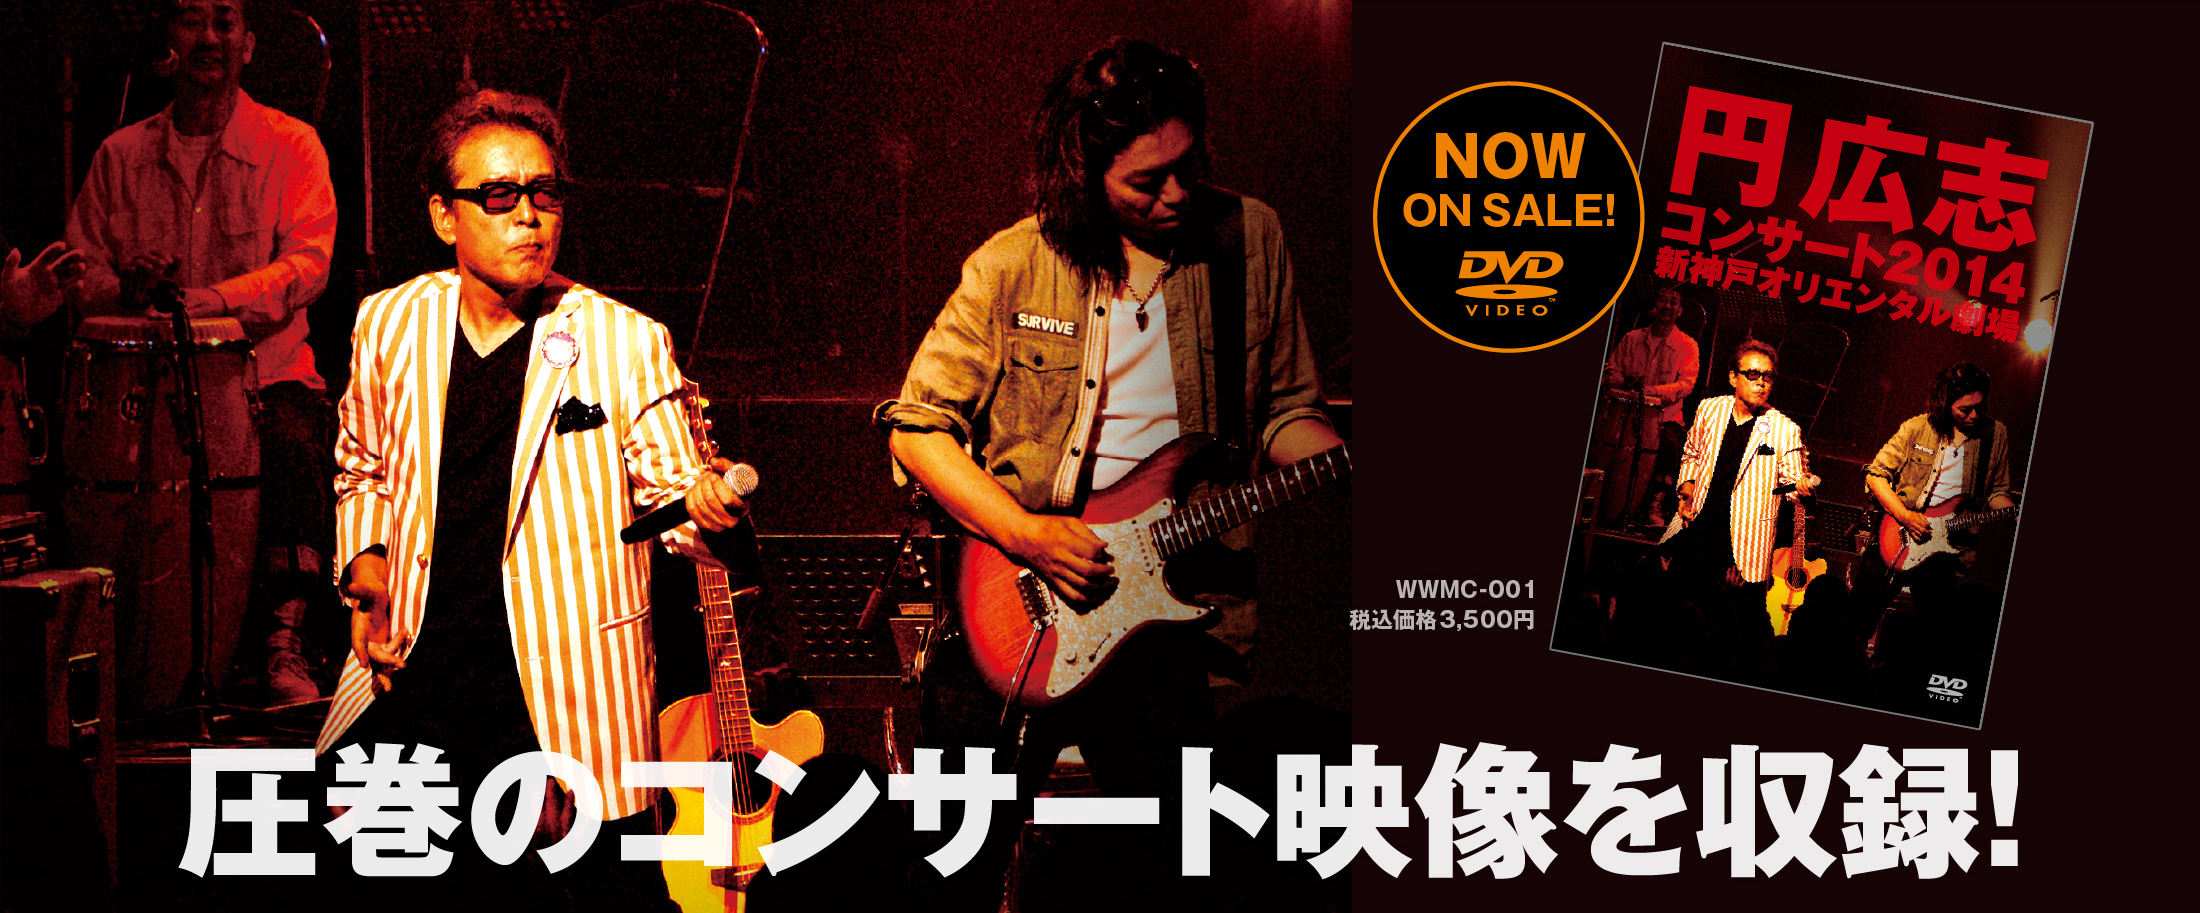 [DVD] 円 広志 コンサート2014 新神戸オリエンタル劇場 NOW ON SALE!